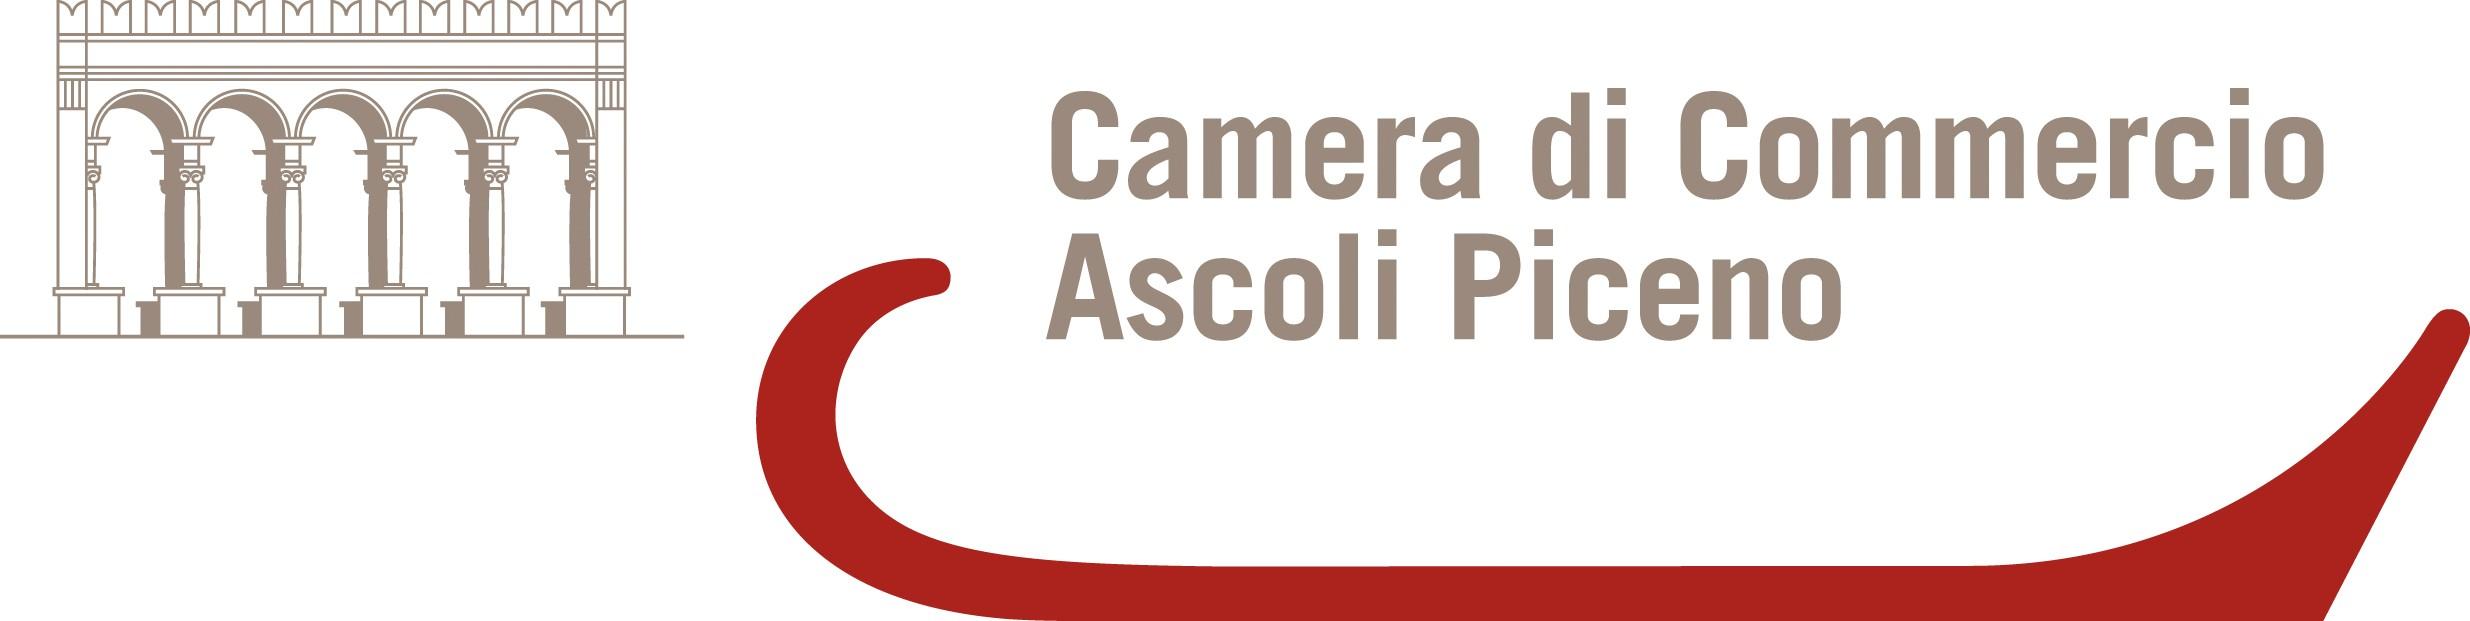 Camera di Commercio - Ascoli Piceno